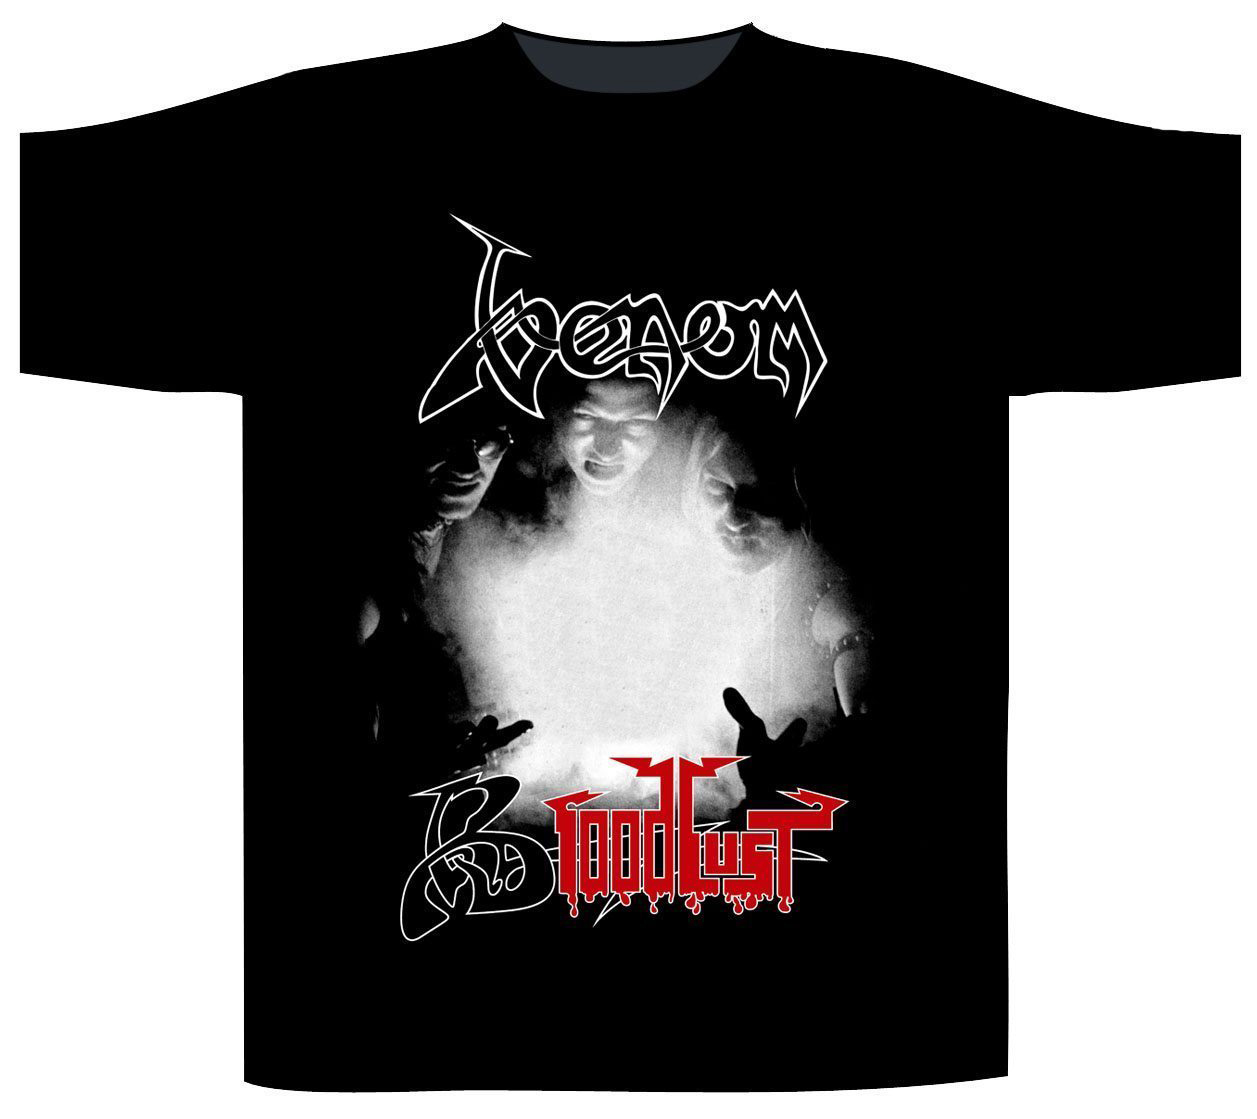 Venom Bloodlust Black Metal Rock Band Shirt